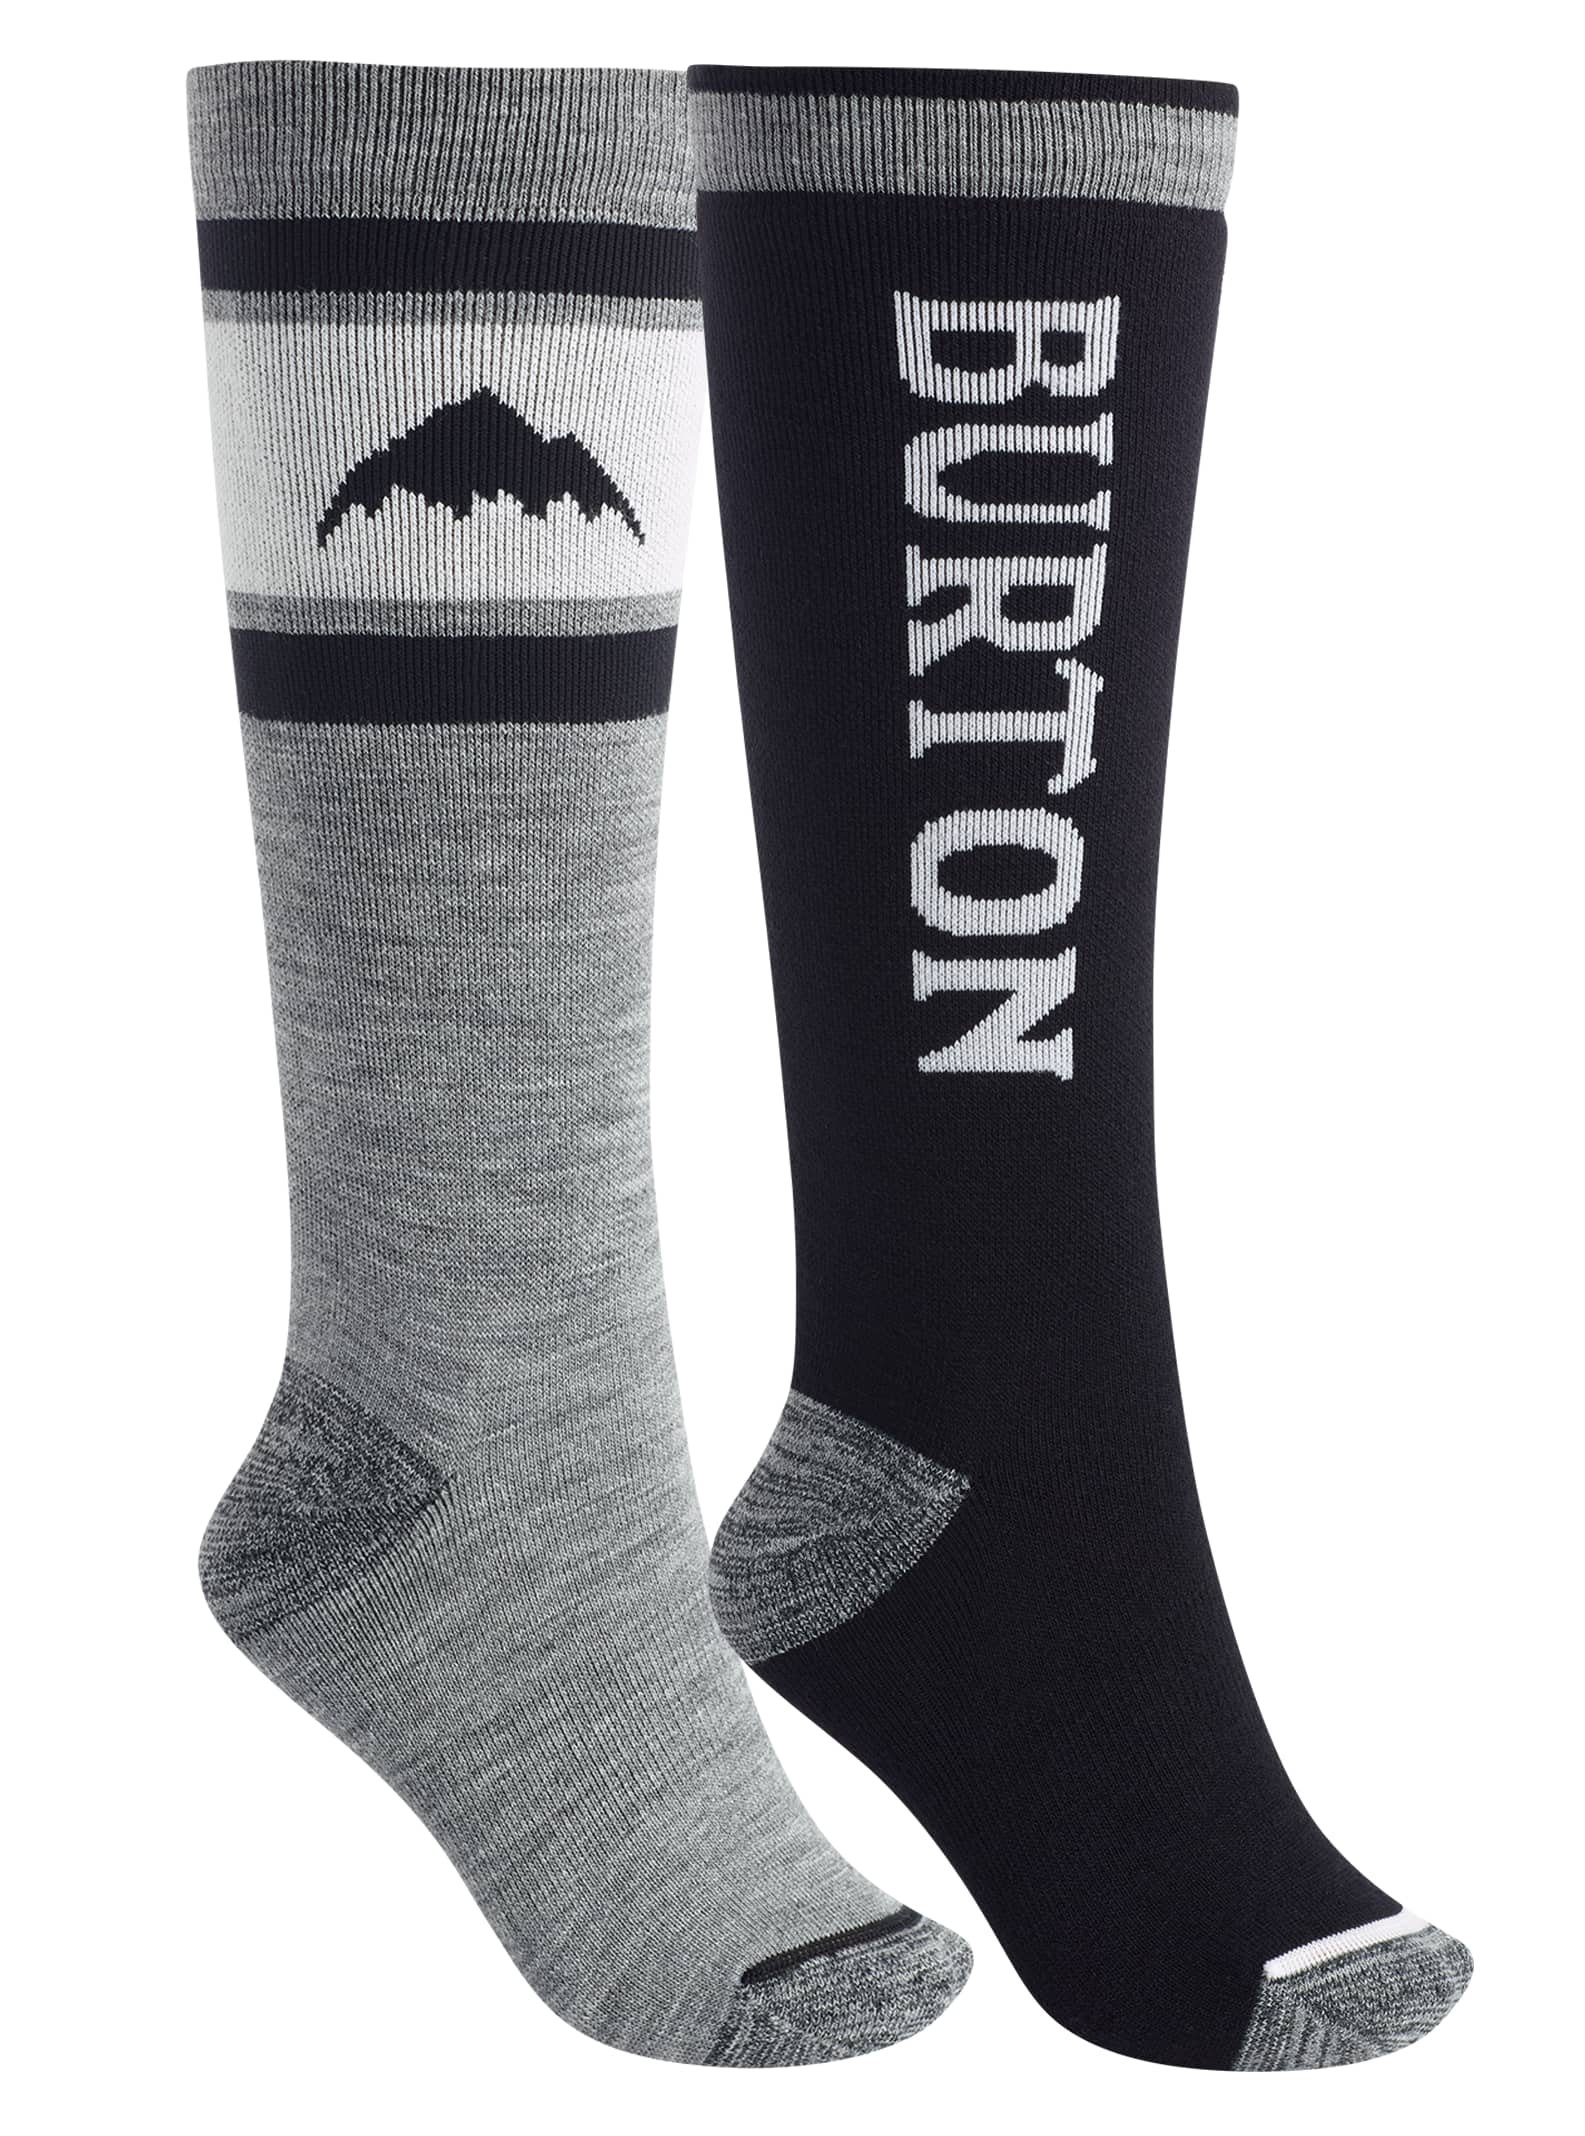 Burton Snowboard Socks Size Chart